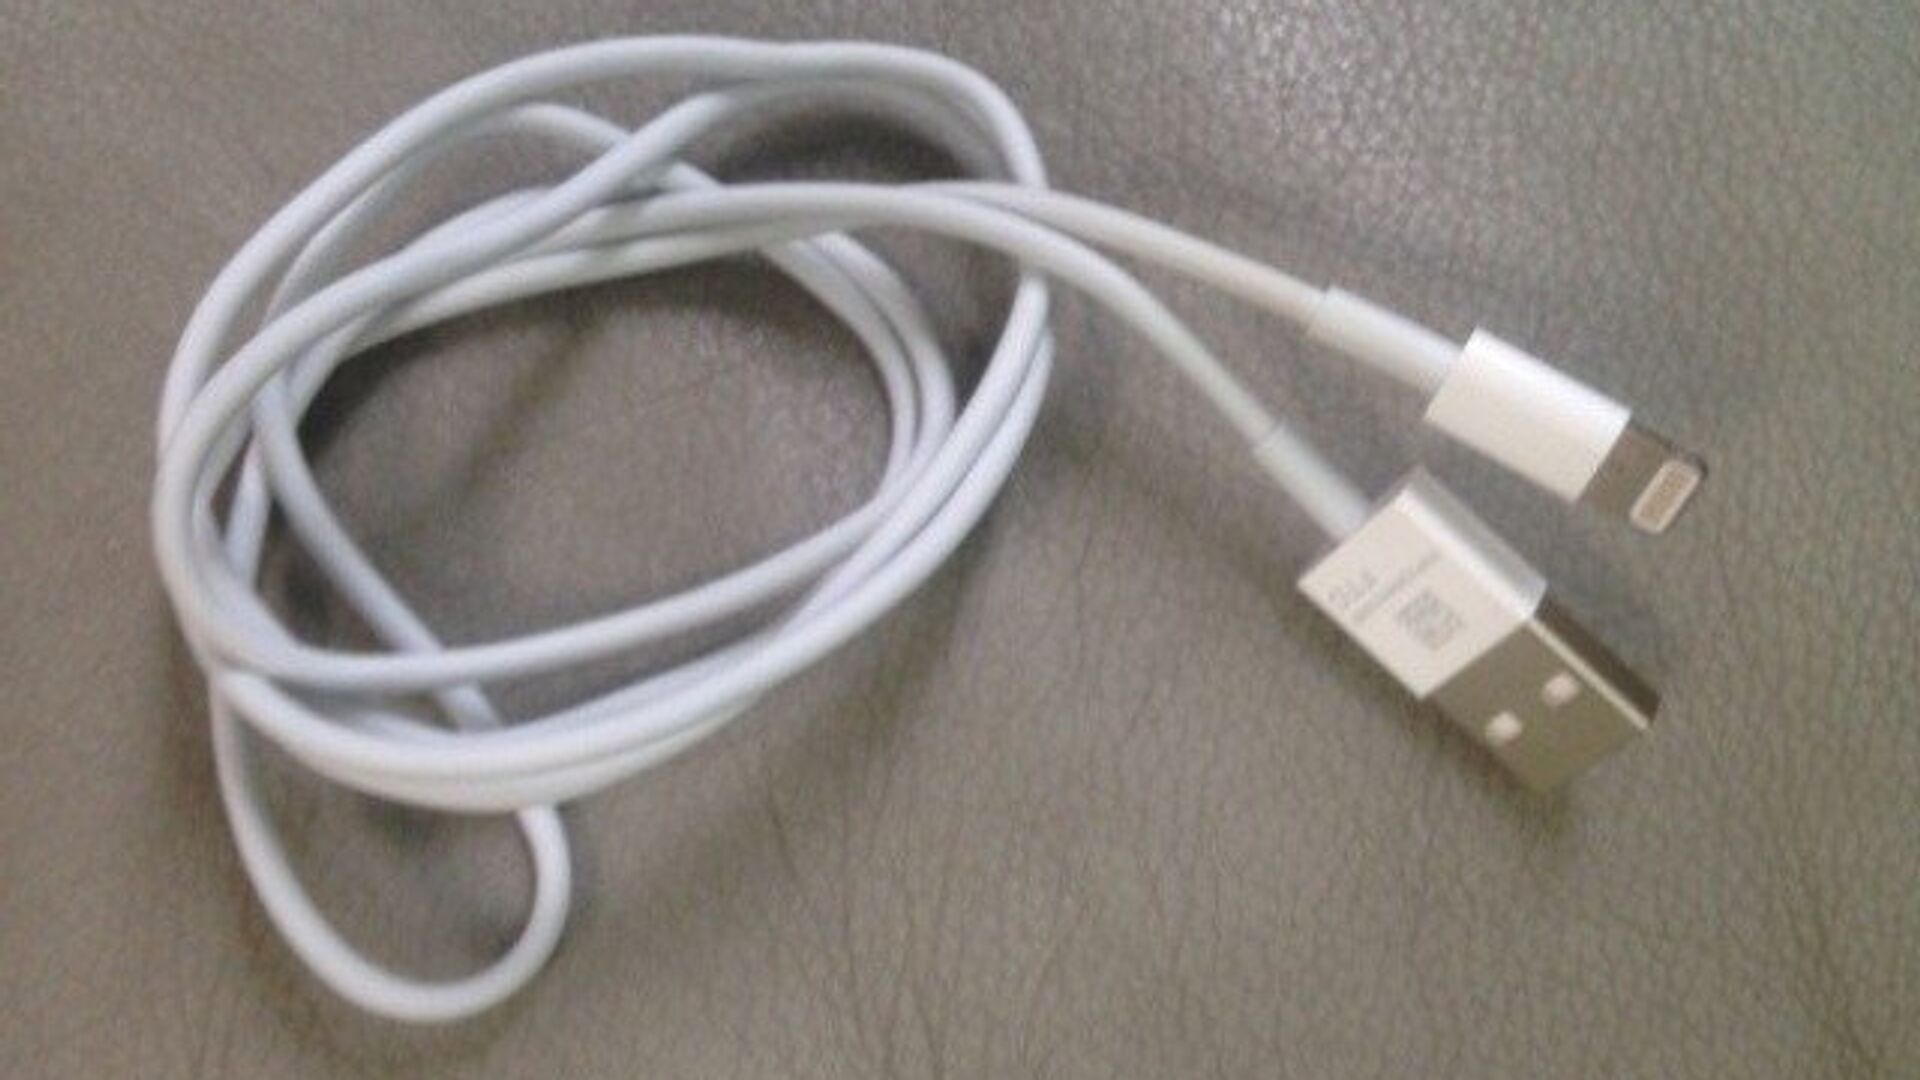 USB-кабель, предположительно для нового поколения смартфонов Apple iPhone - РИА Новости, 1920, 05.03.2022